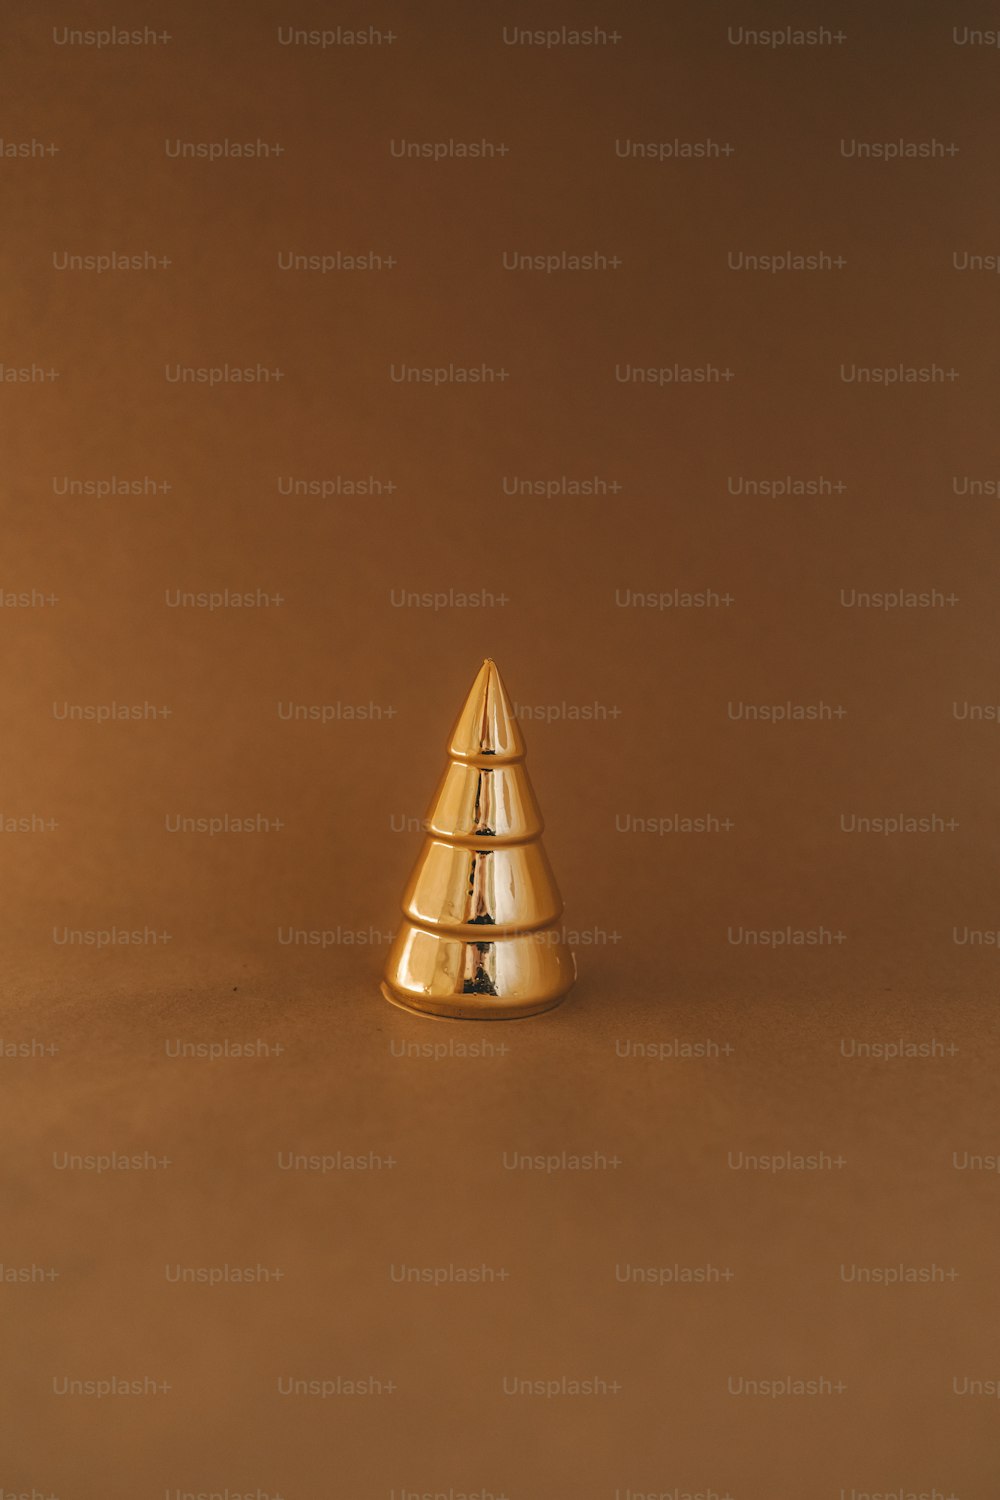 ein goldenes kegelförmiges Objekt auf braunem Hintergrund